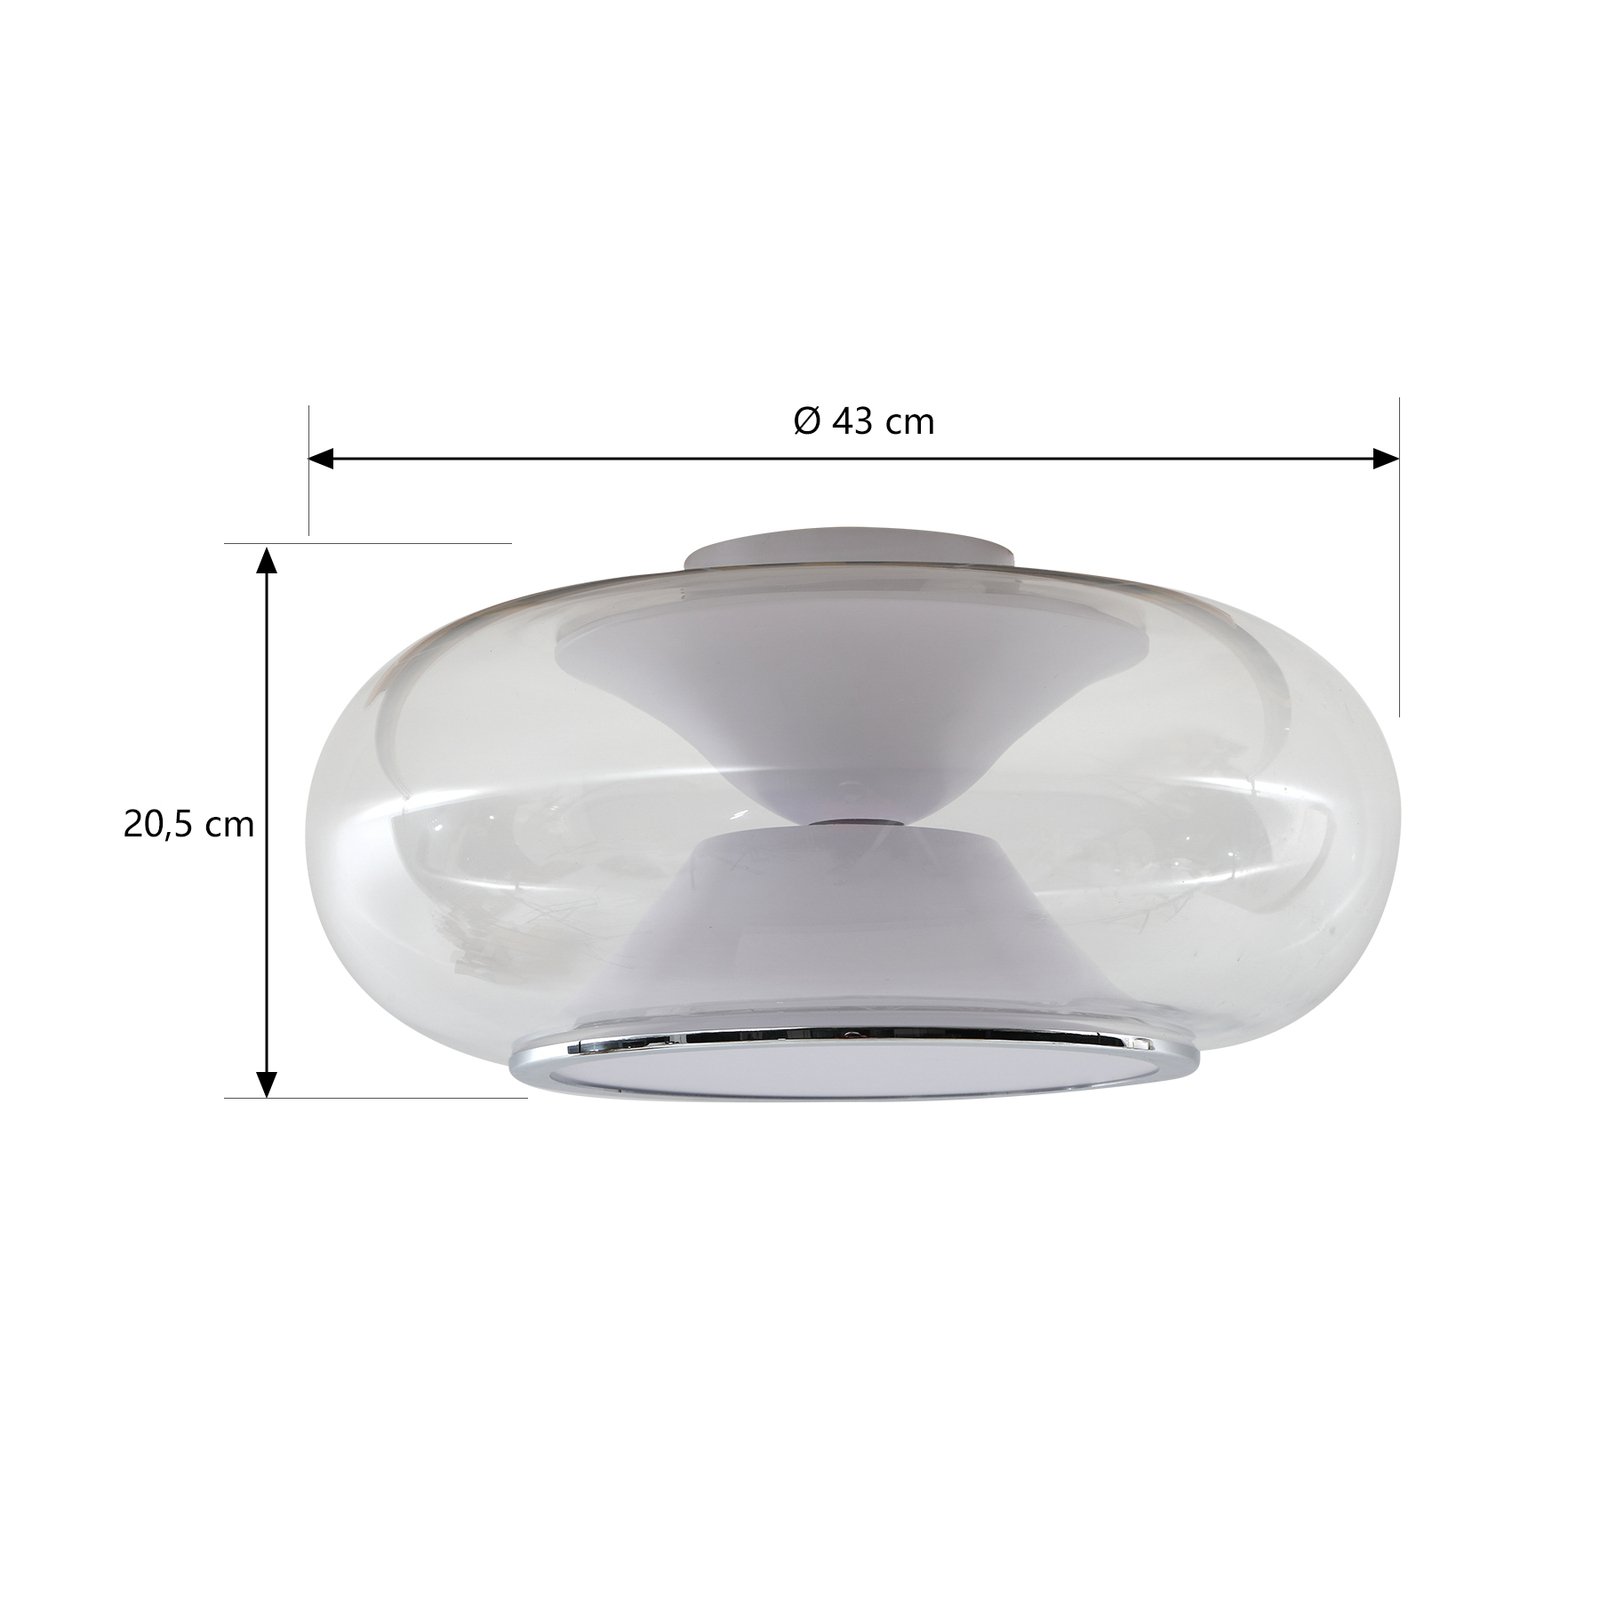 Lucande Orasa LED ceiling light, glass, white/clear, Ø 43 cm